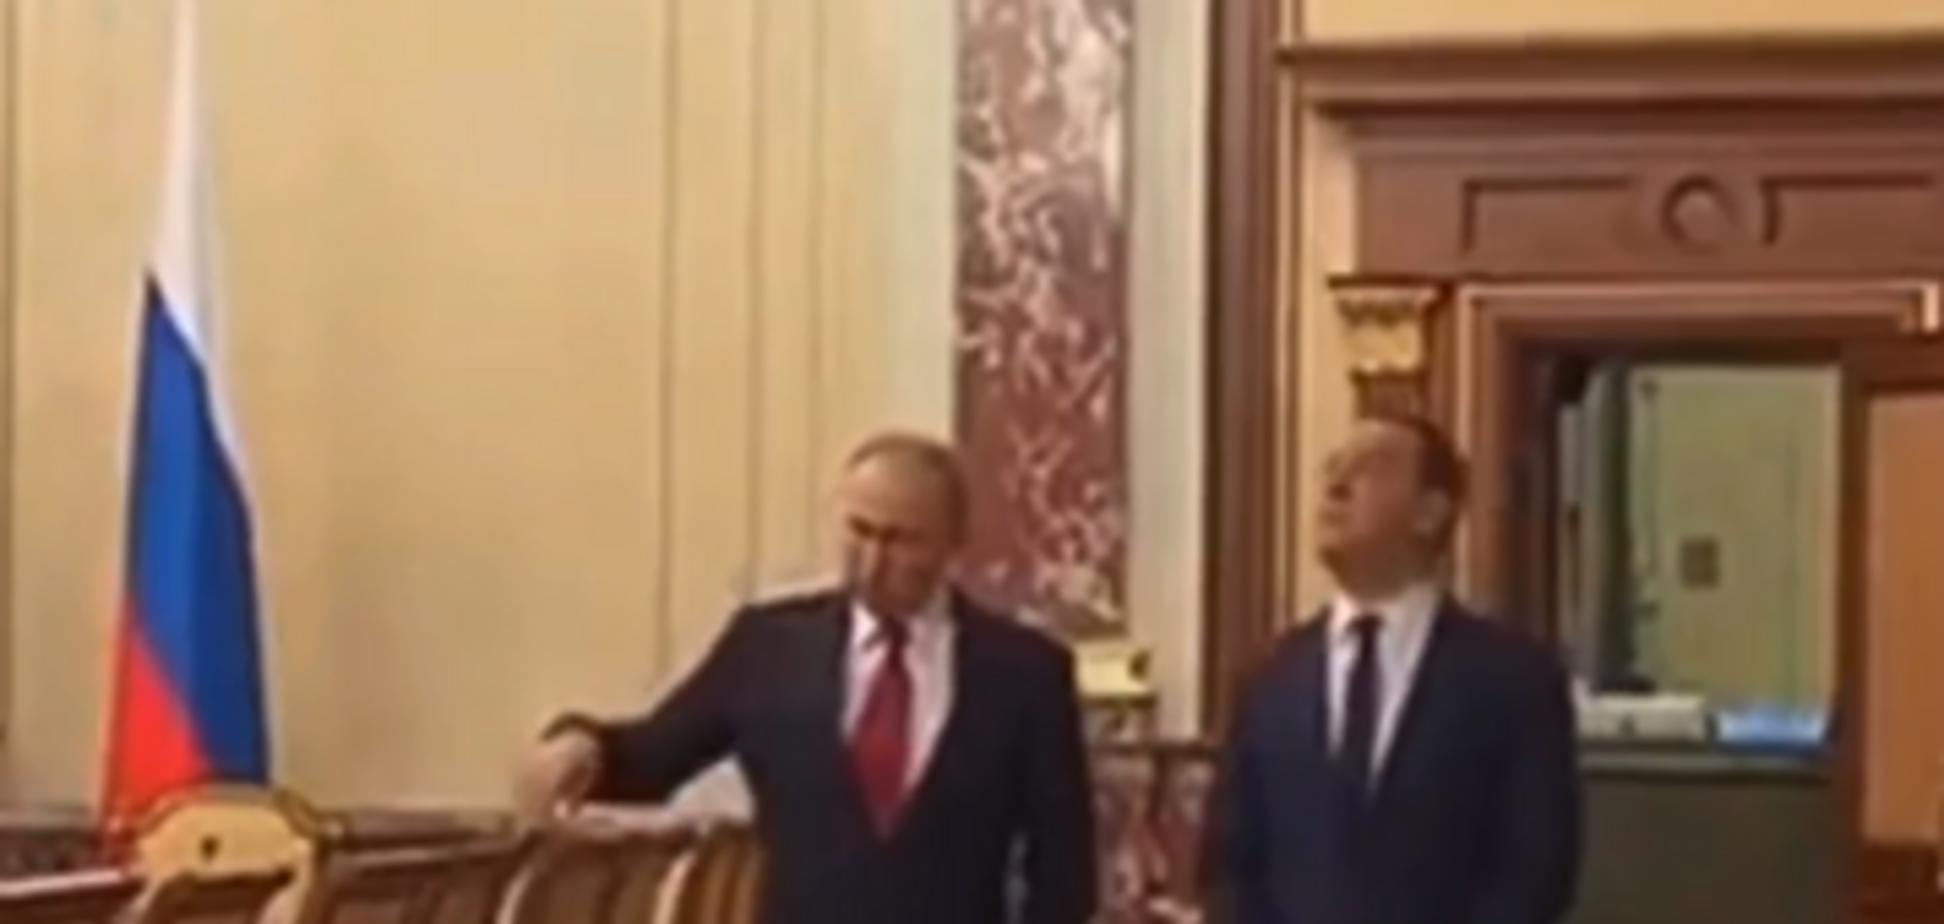 Слили разговор Медведева с Путиным перед отставкой